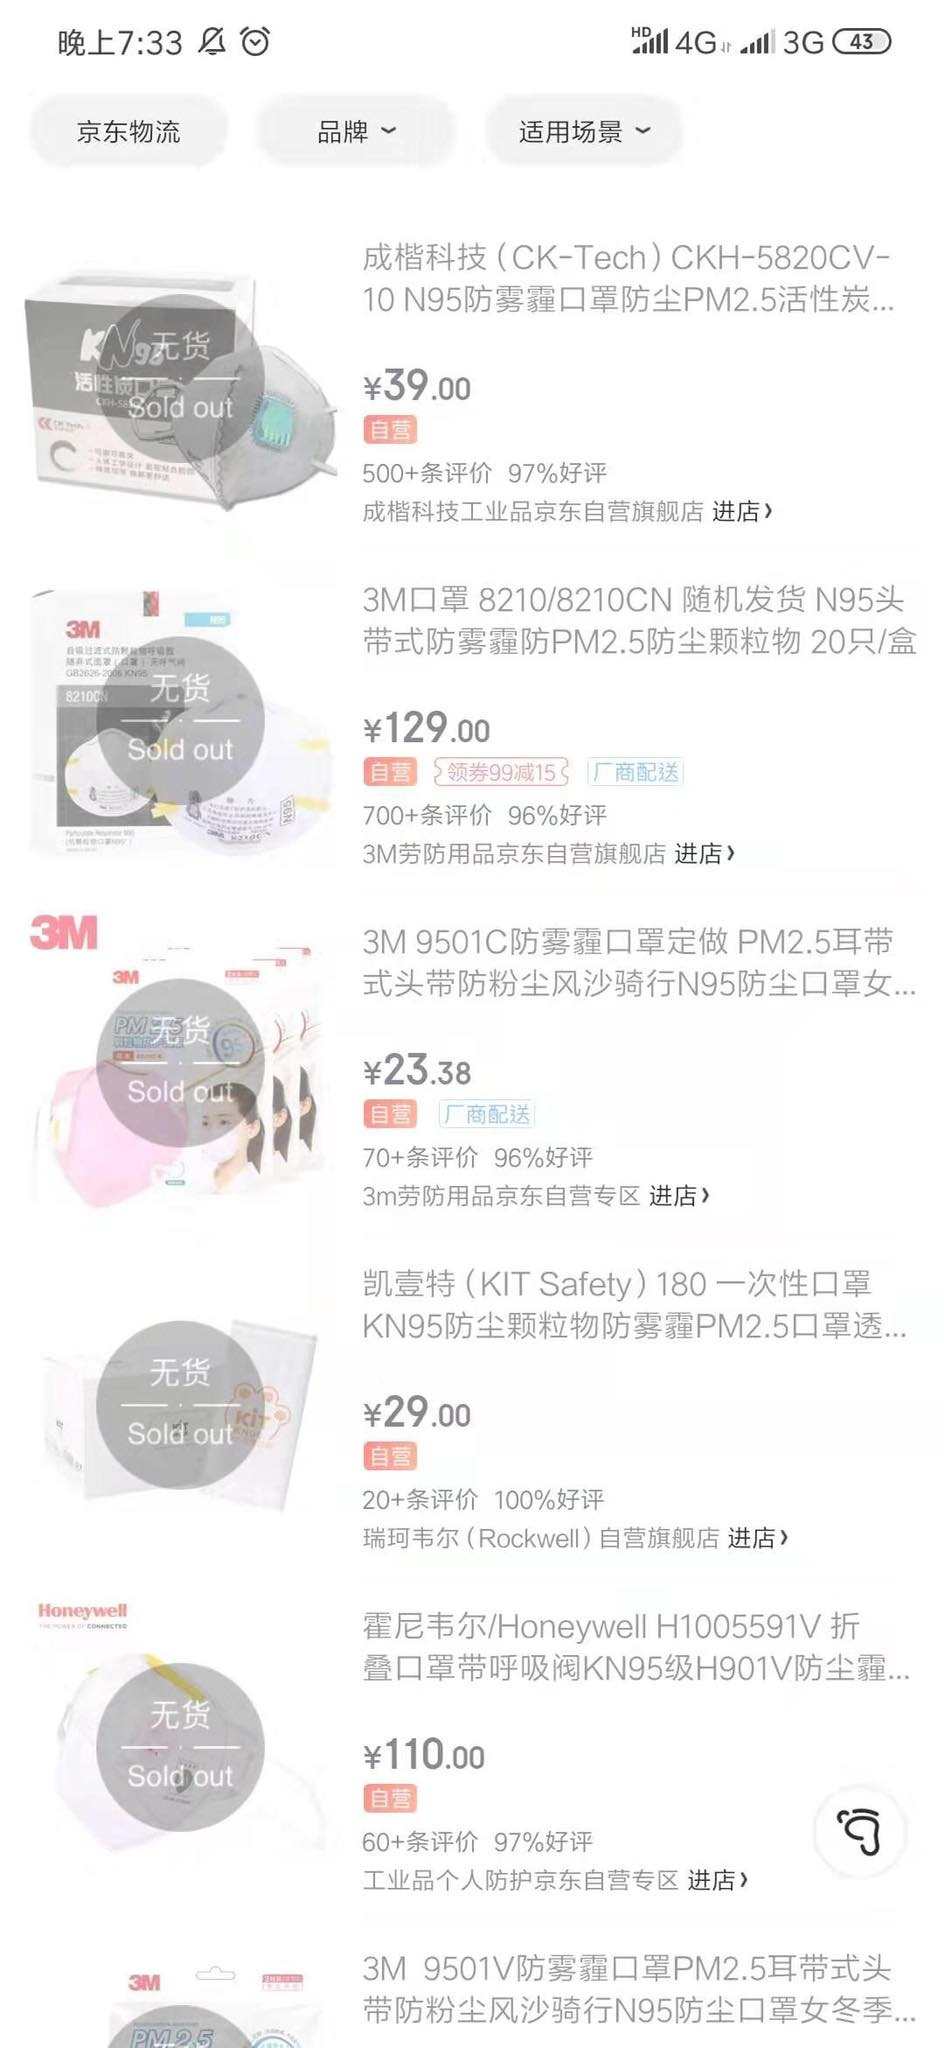 Респираторные маски не найти даже в китайских онлайн-магазинах